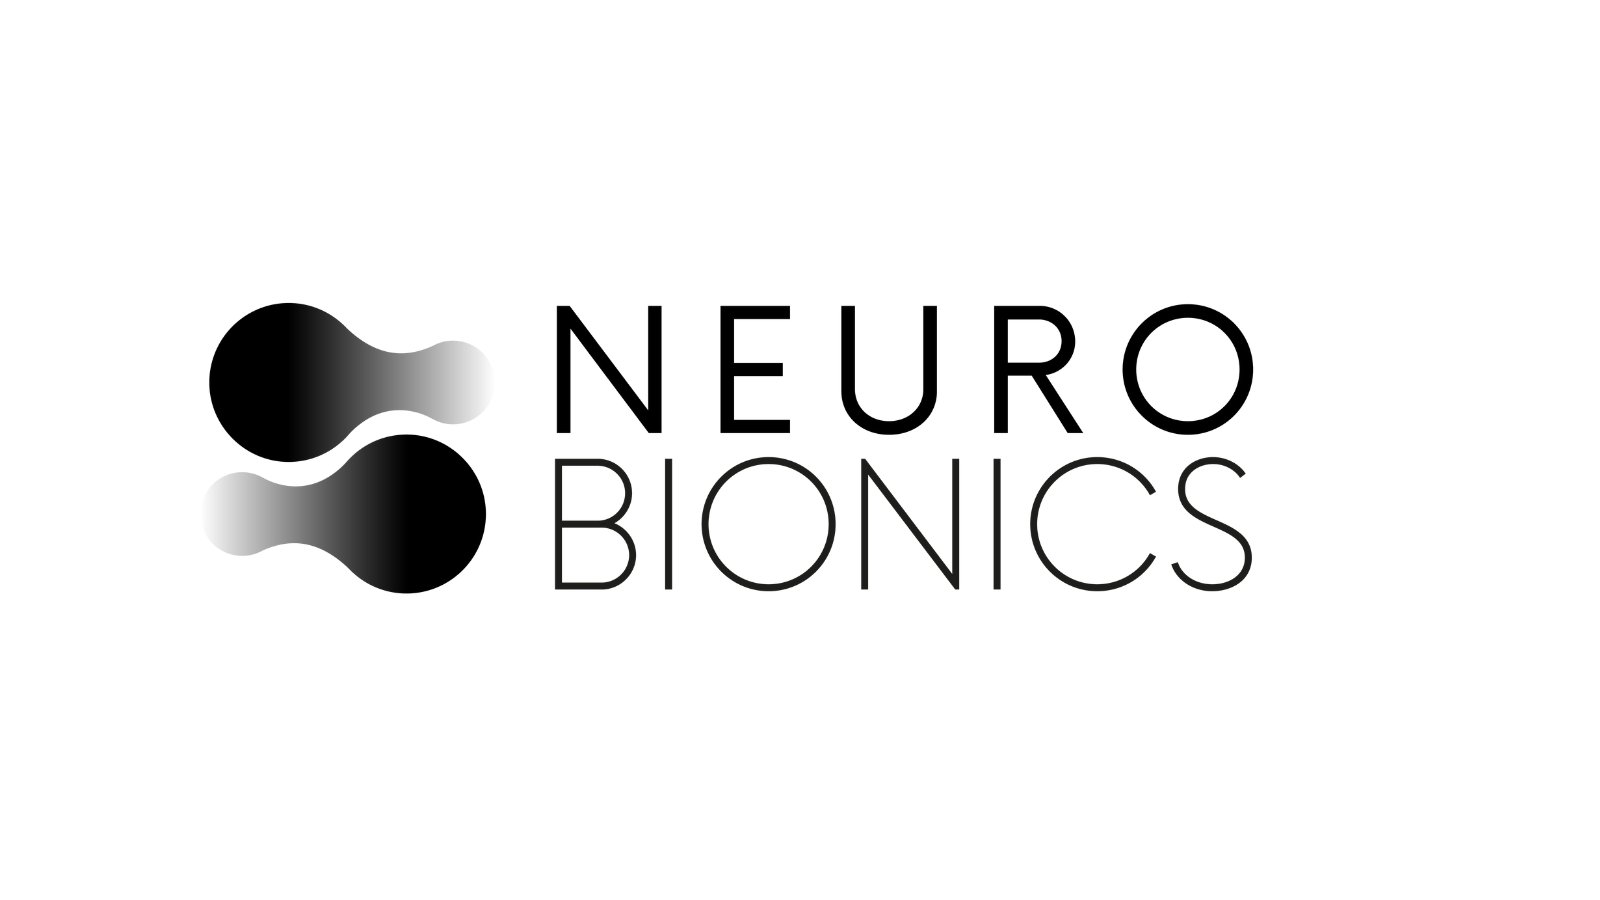 NeuroBionics